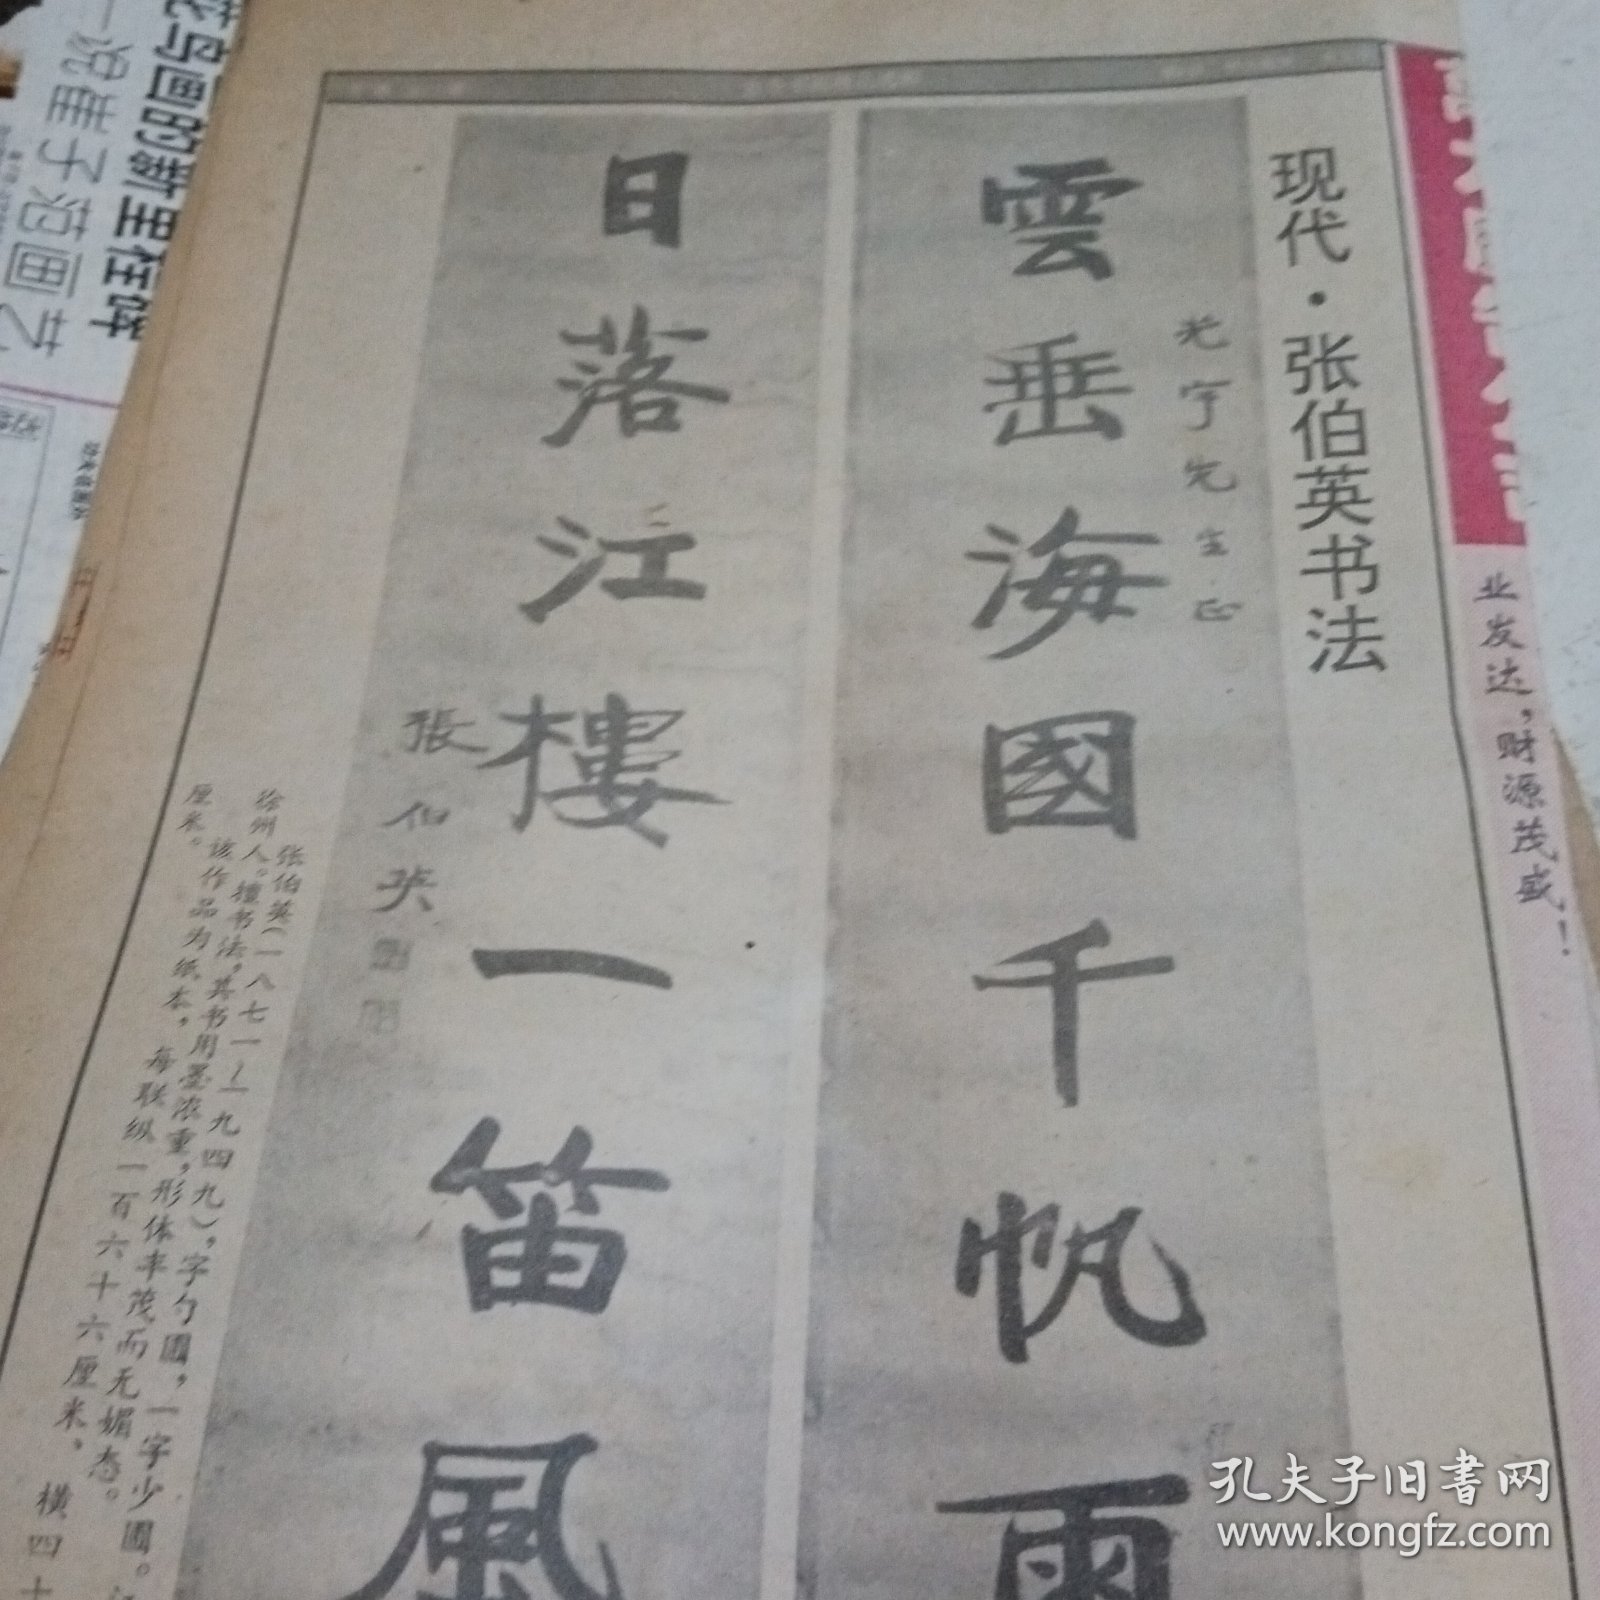 中国书画报1995.1.12